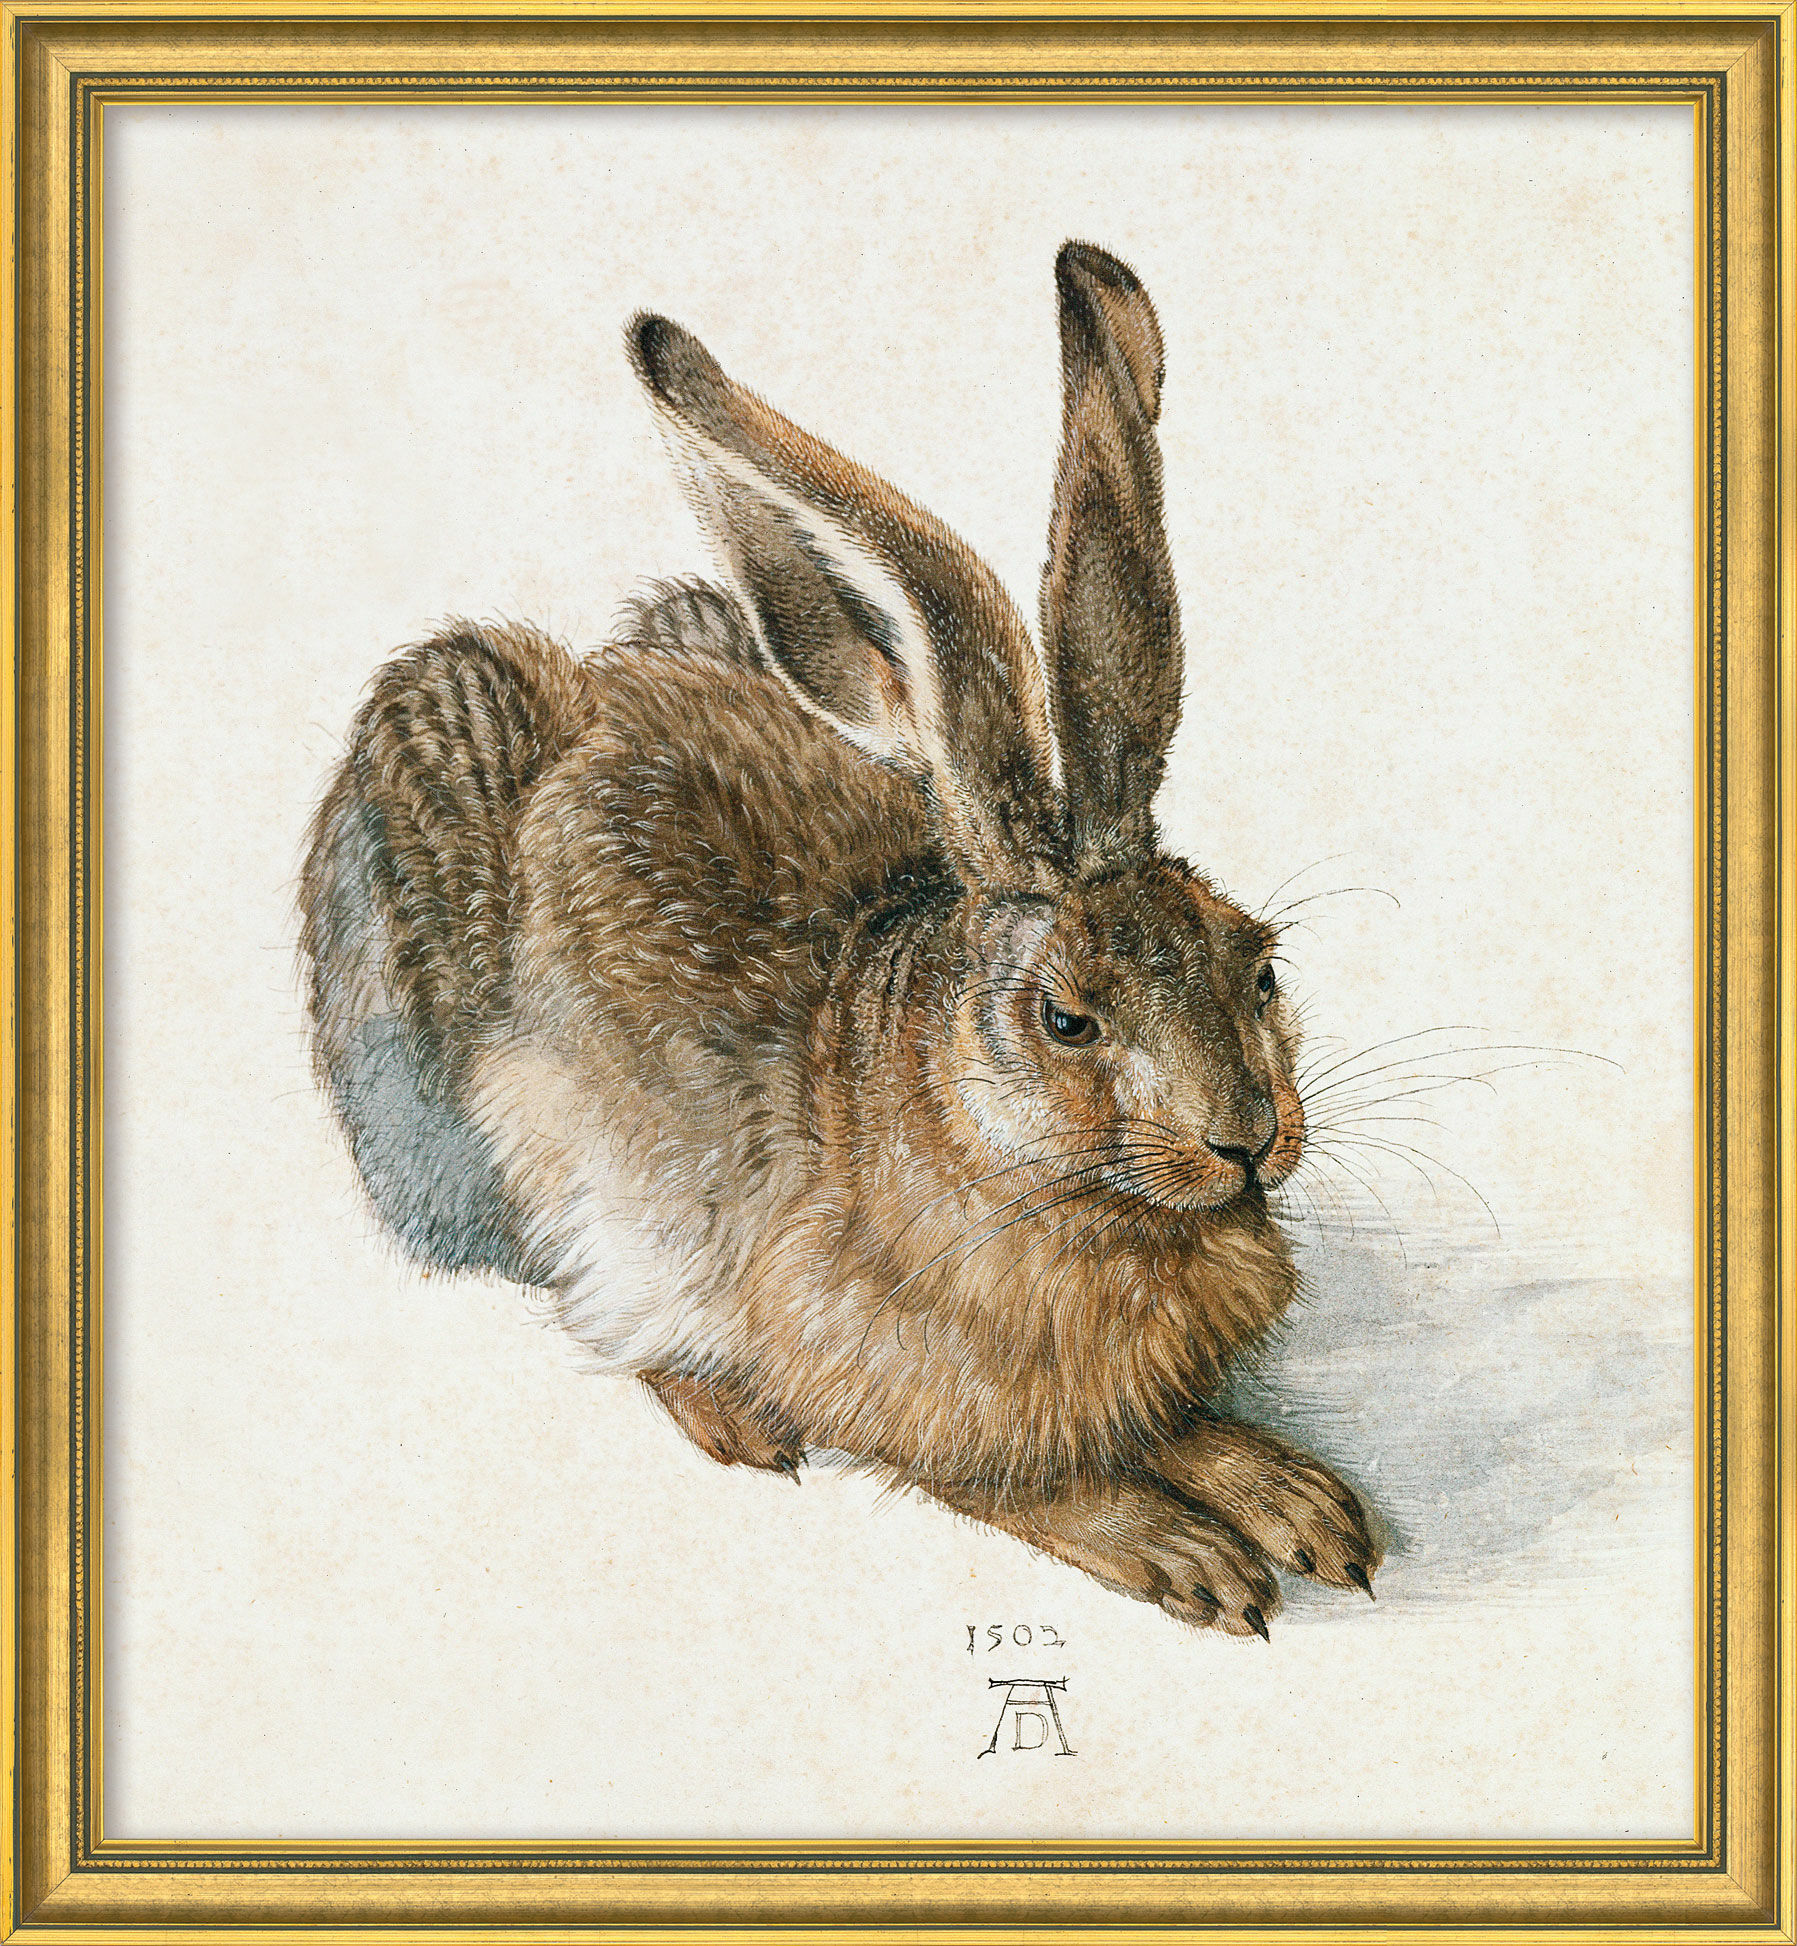 Billede "Ung hare" (1502), gylden indrammet version von Albrecht Dürer